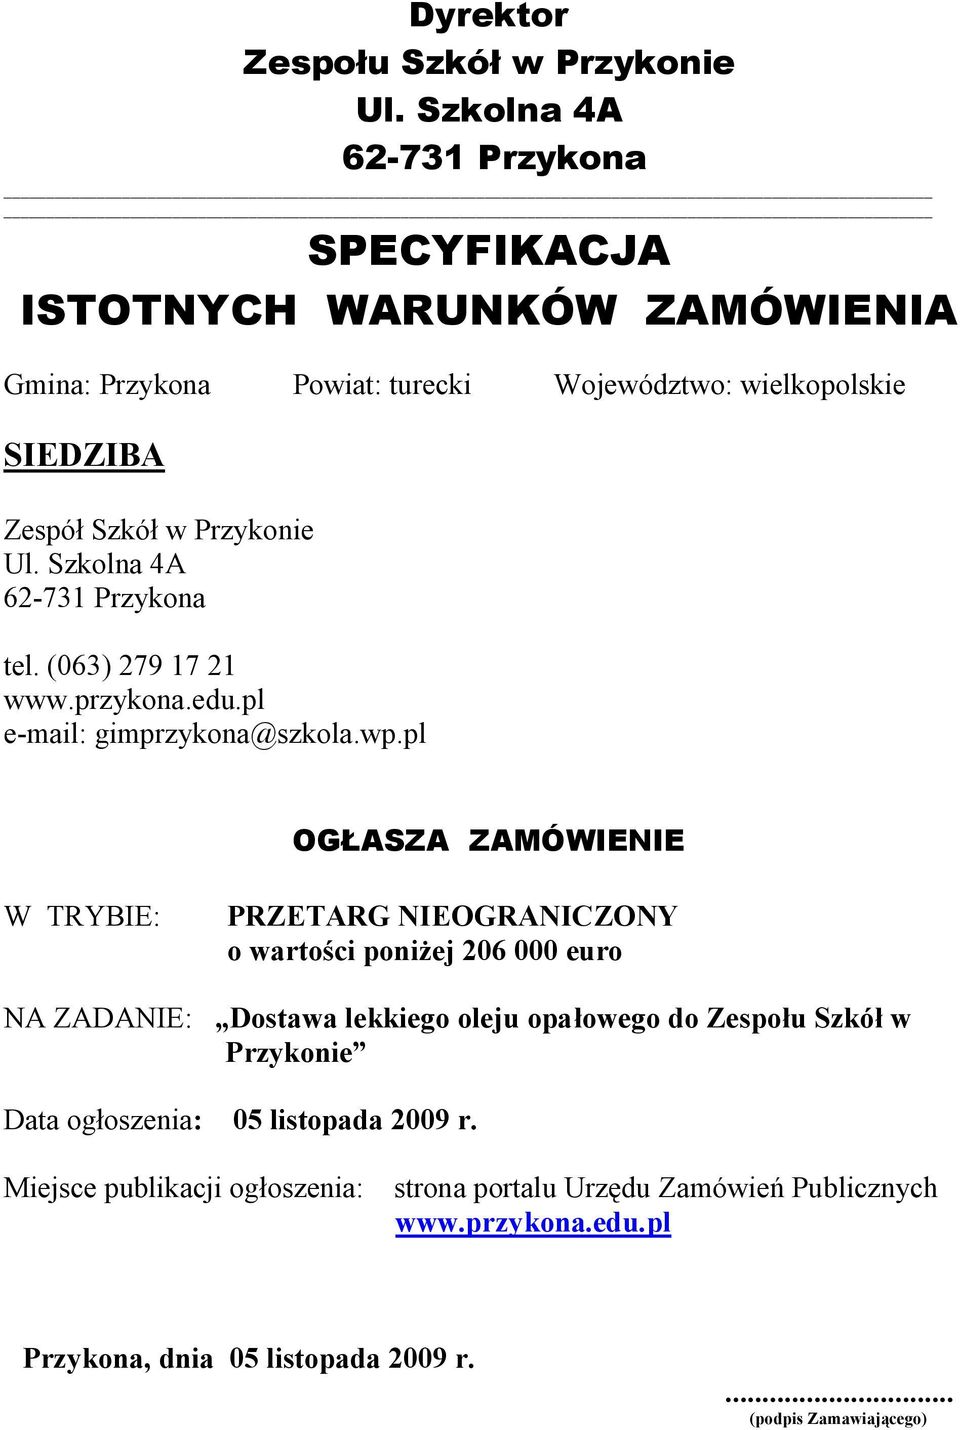 Ul. Szkolna 4A 62-731 Przykona tel. (063) 279 17 21 www.przykona.edu.pl e-mail: gimprzykona@szkola.wp.